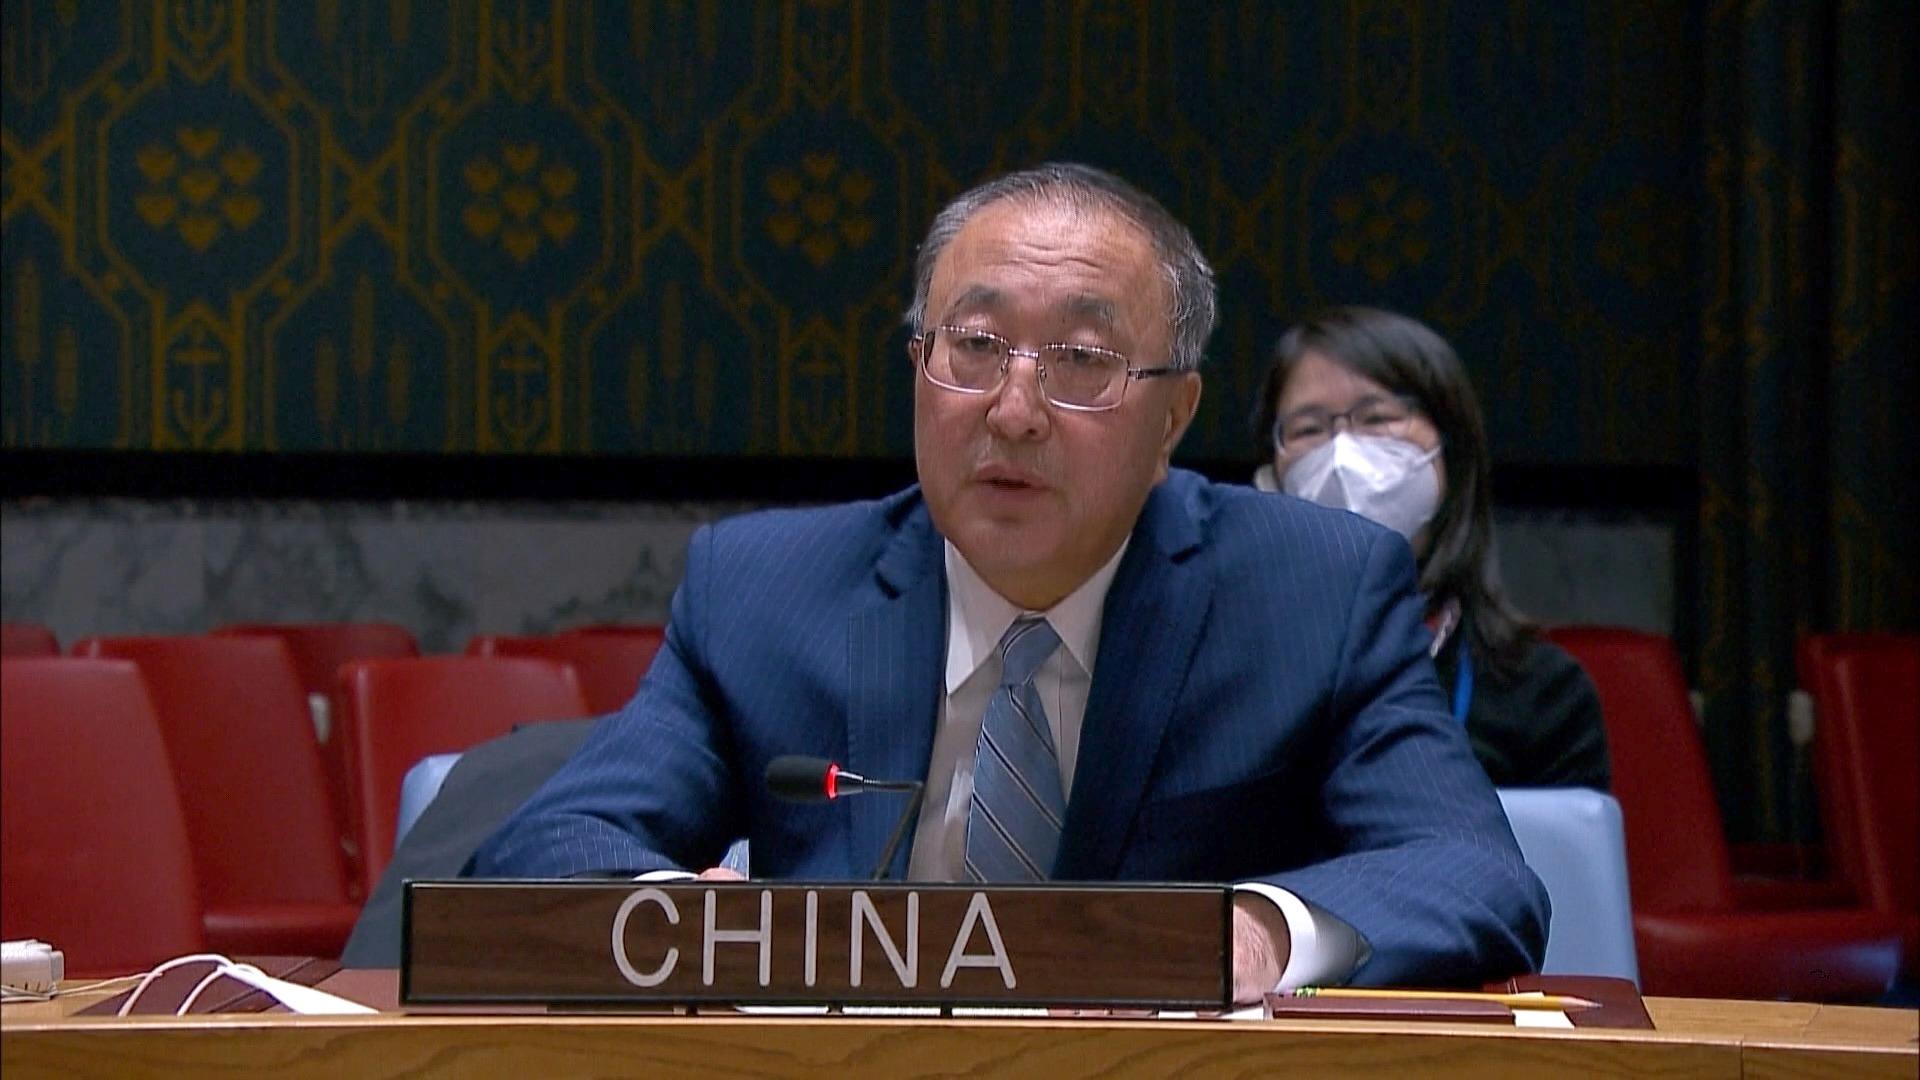 تشریح نظرات چین درباره مساله فلسطین در نشست شورای امنیتا